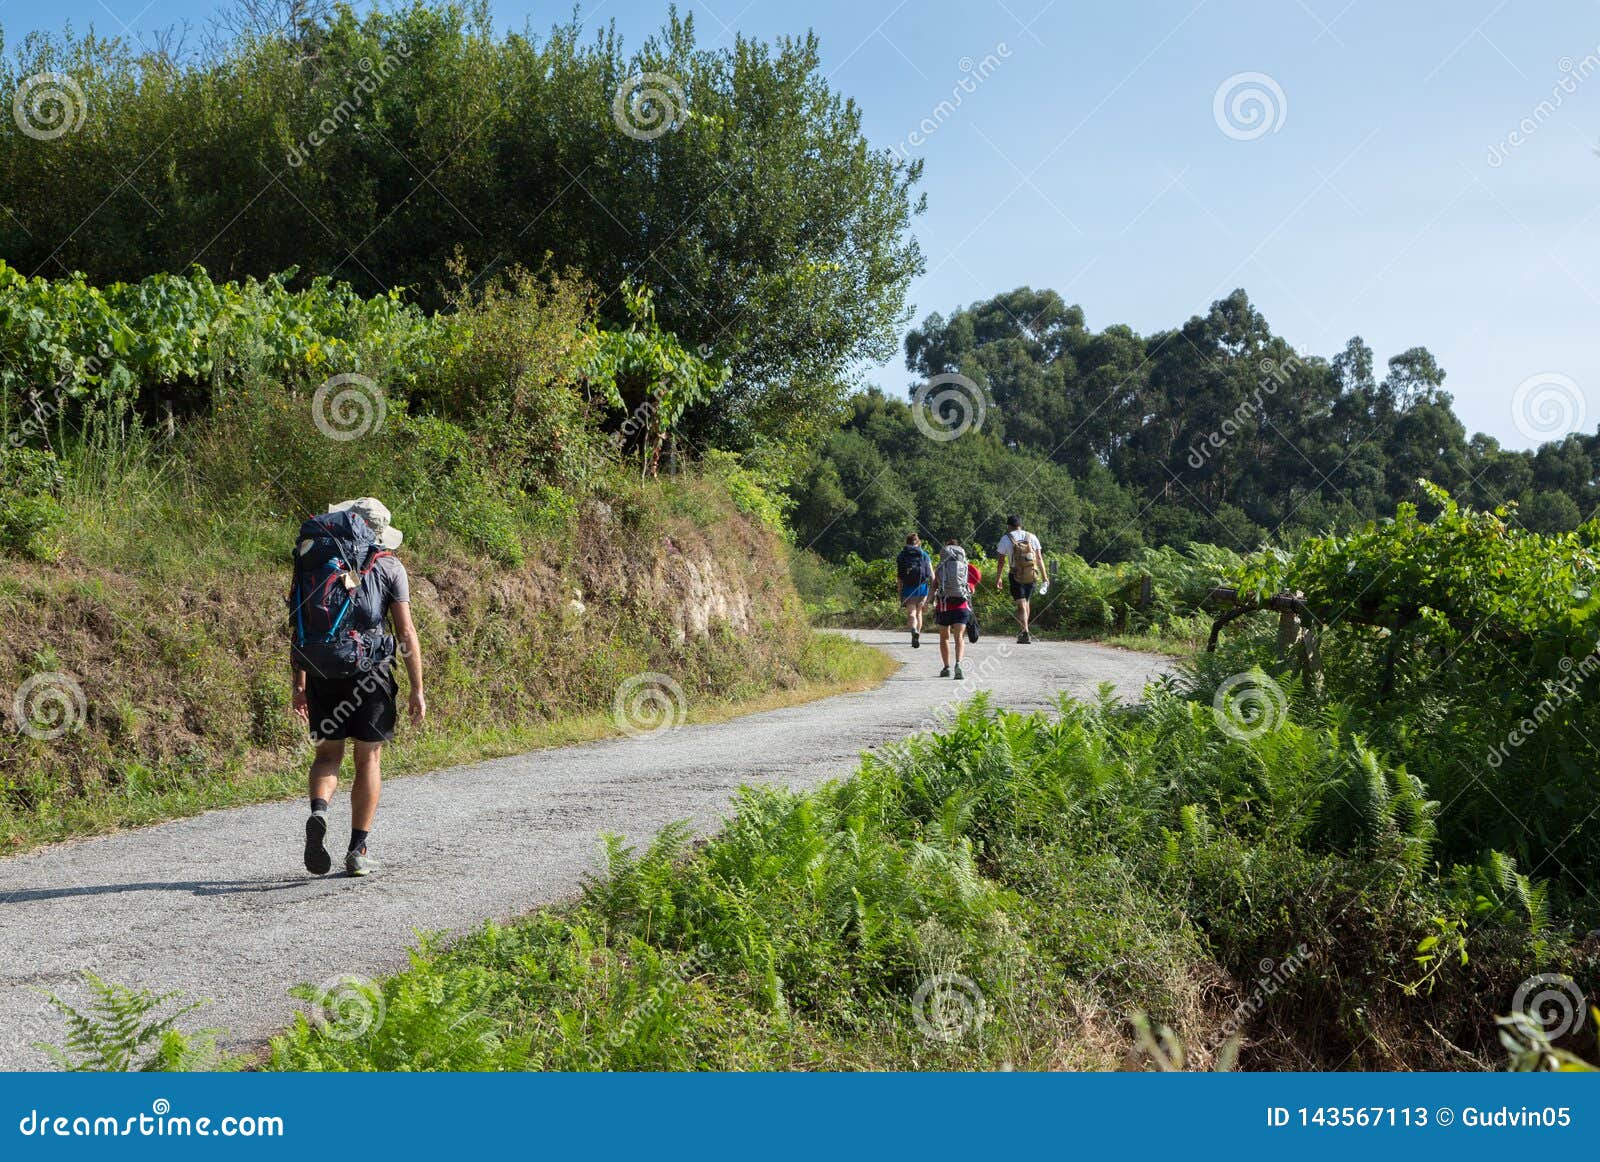 young pilgrims on the camino de santiago, spain